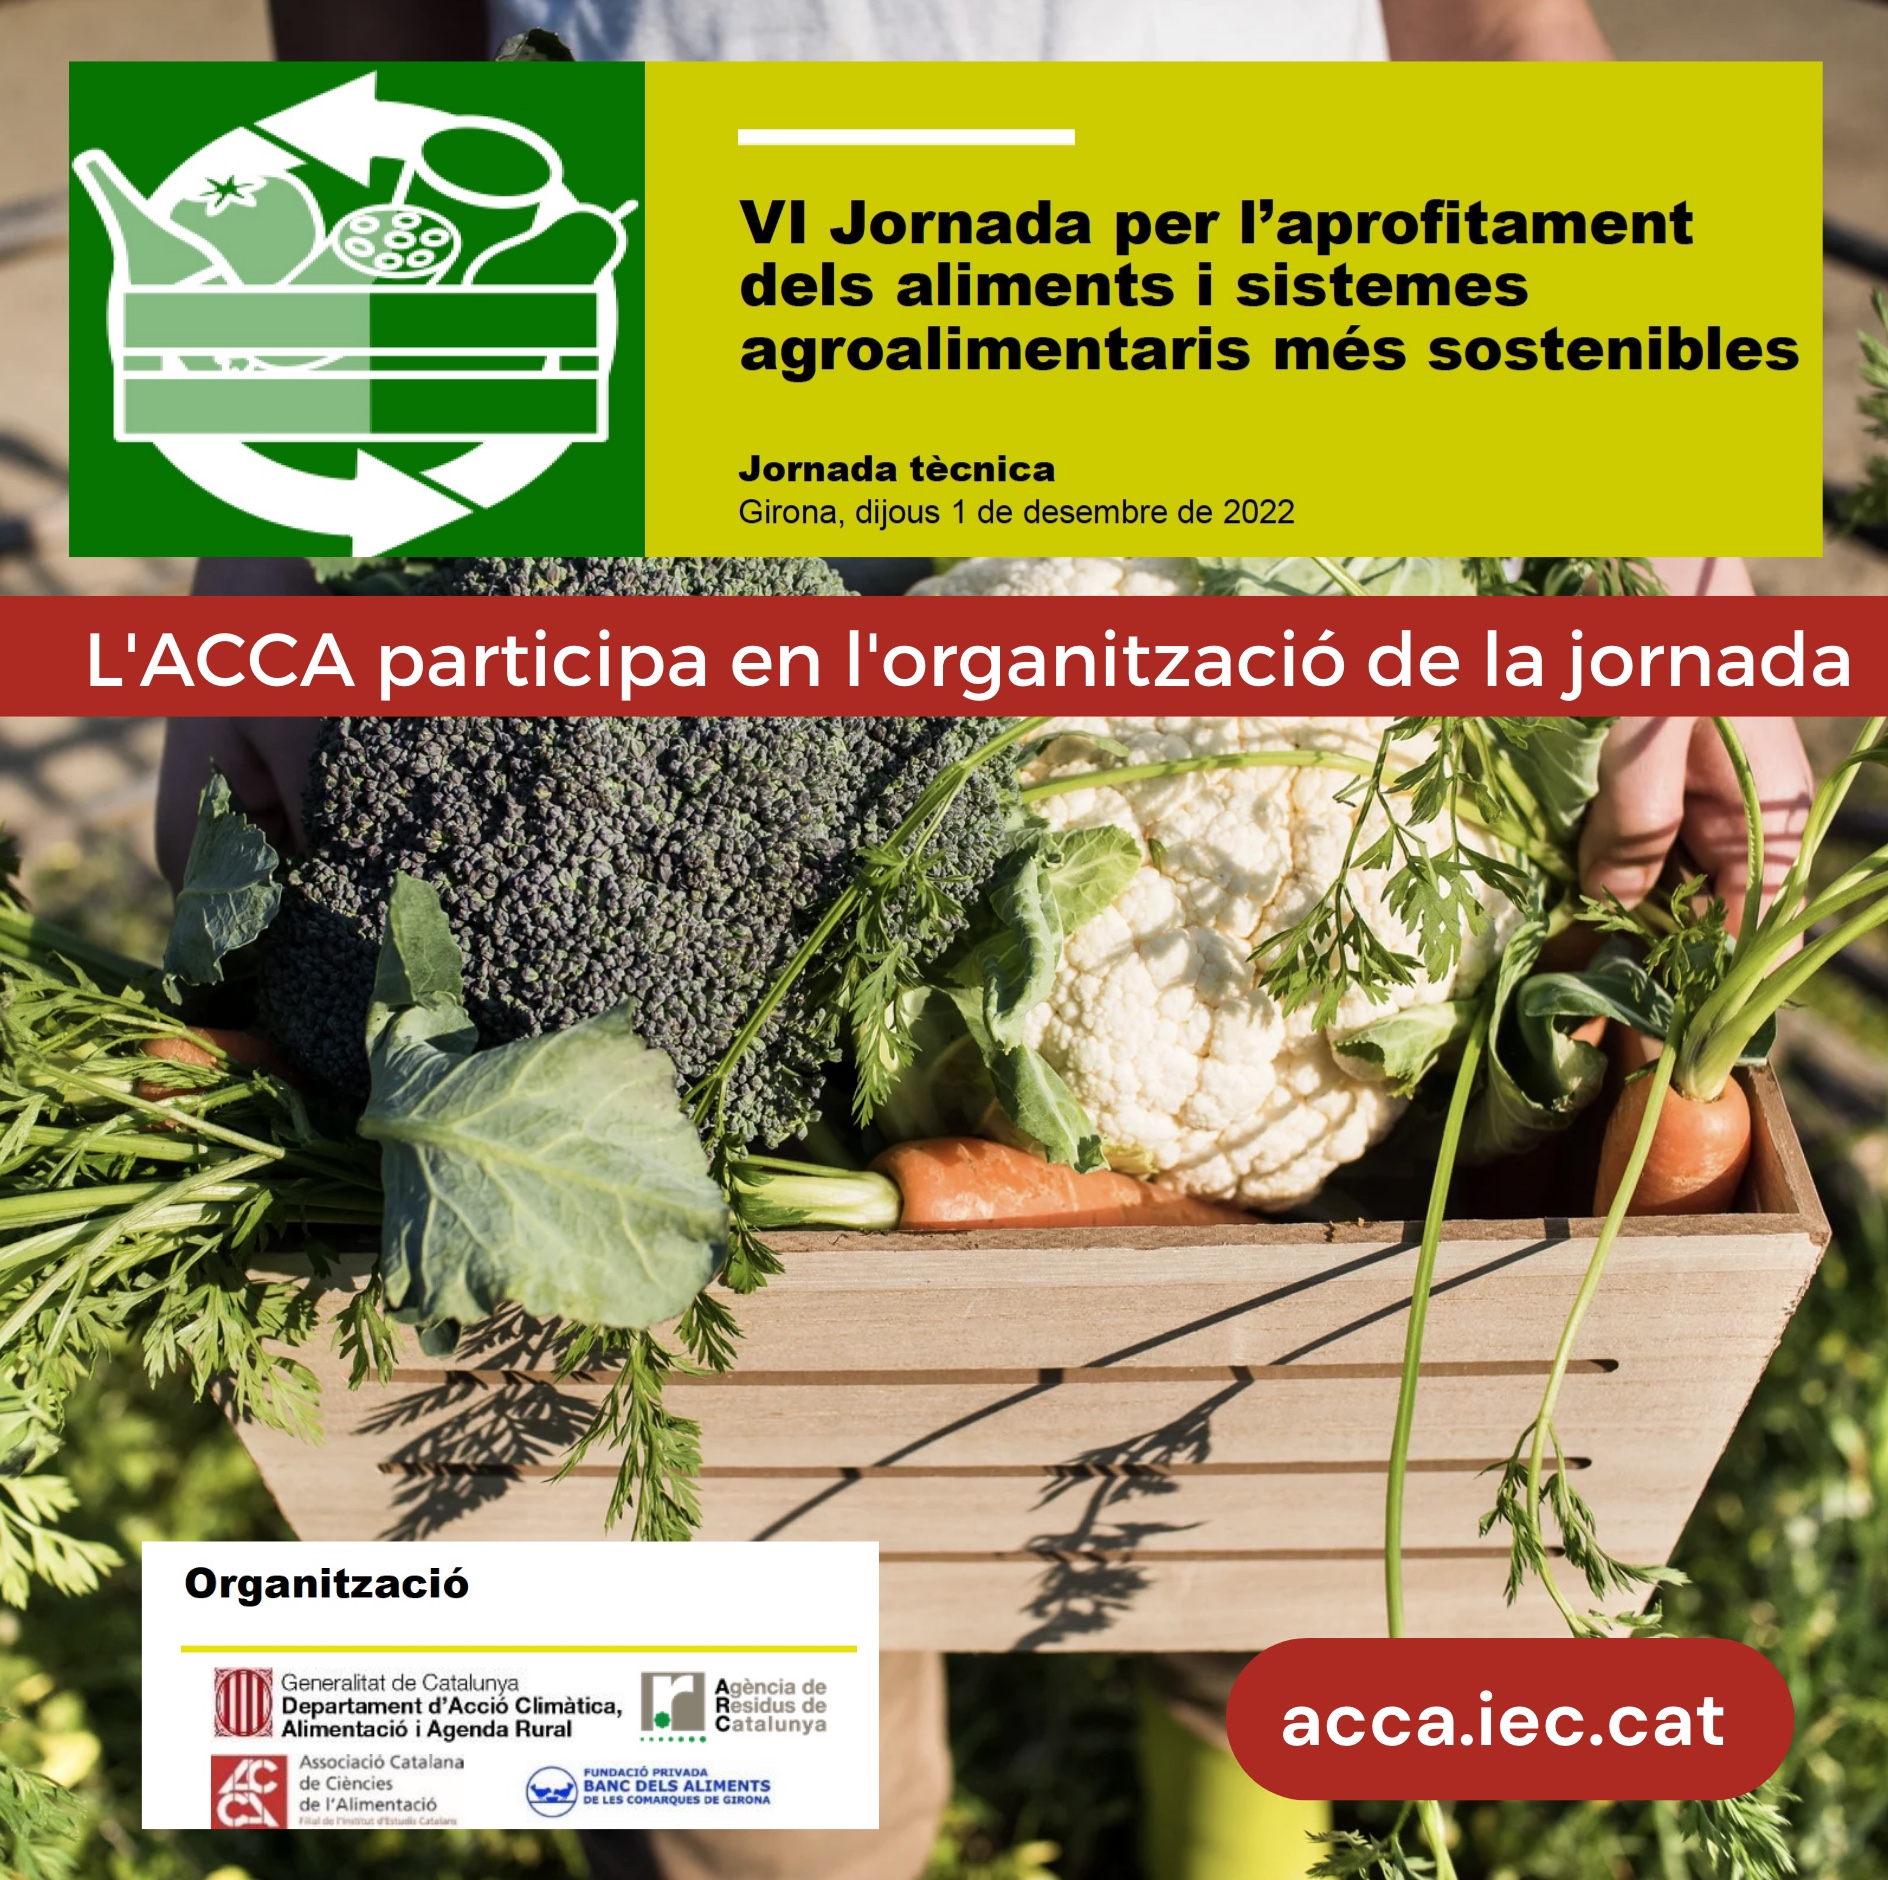 VI Jornada per l’aprofitamentdels aliments i sistemesagroalimentaris més sostenibles